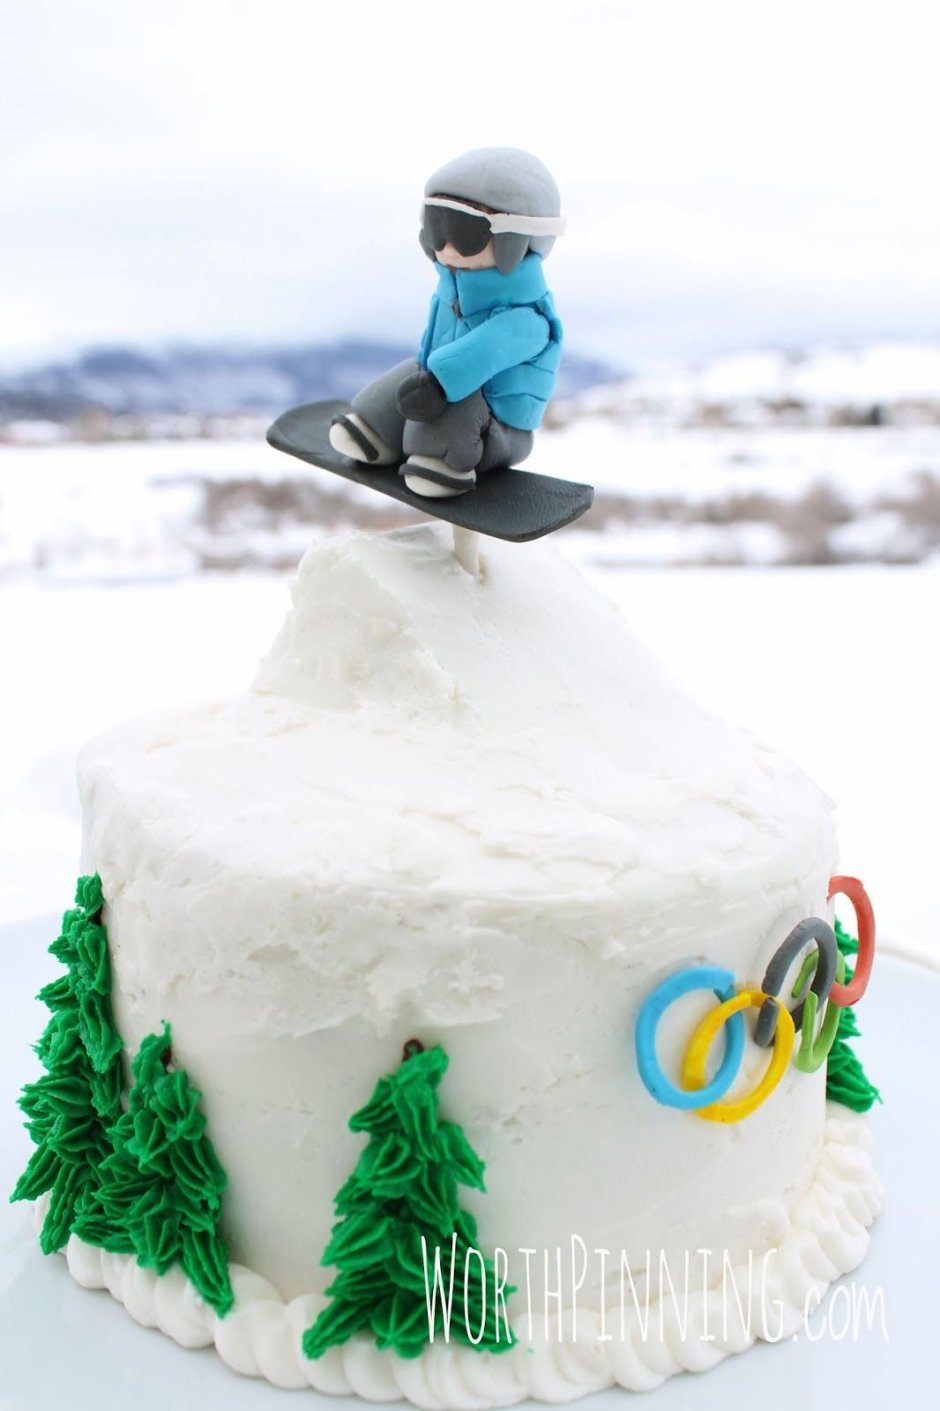 Торт для сноубордиста